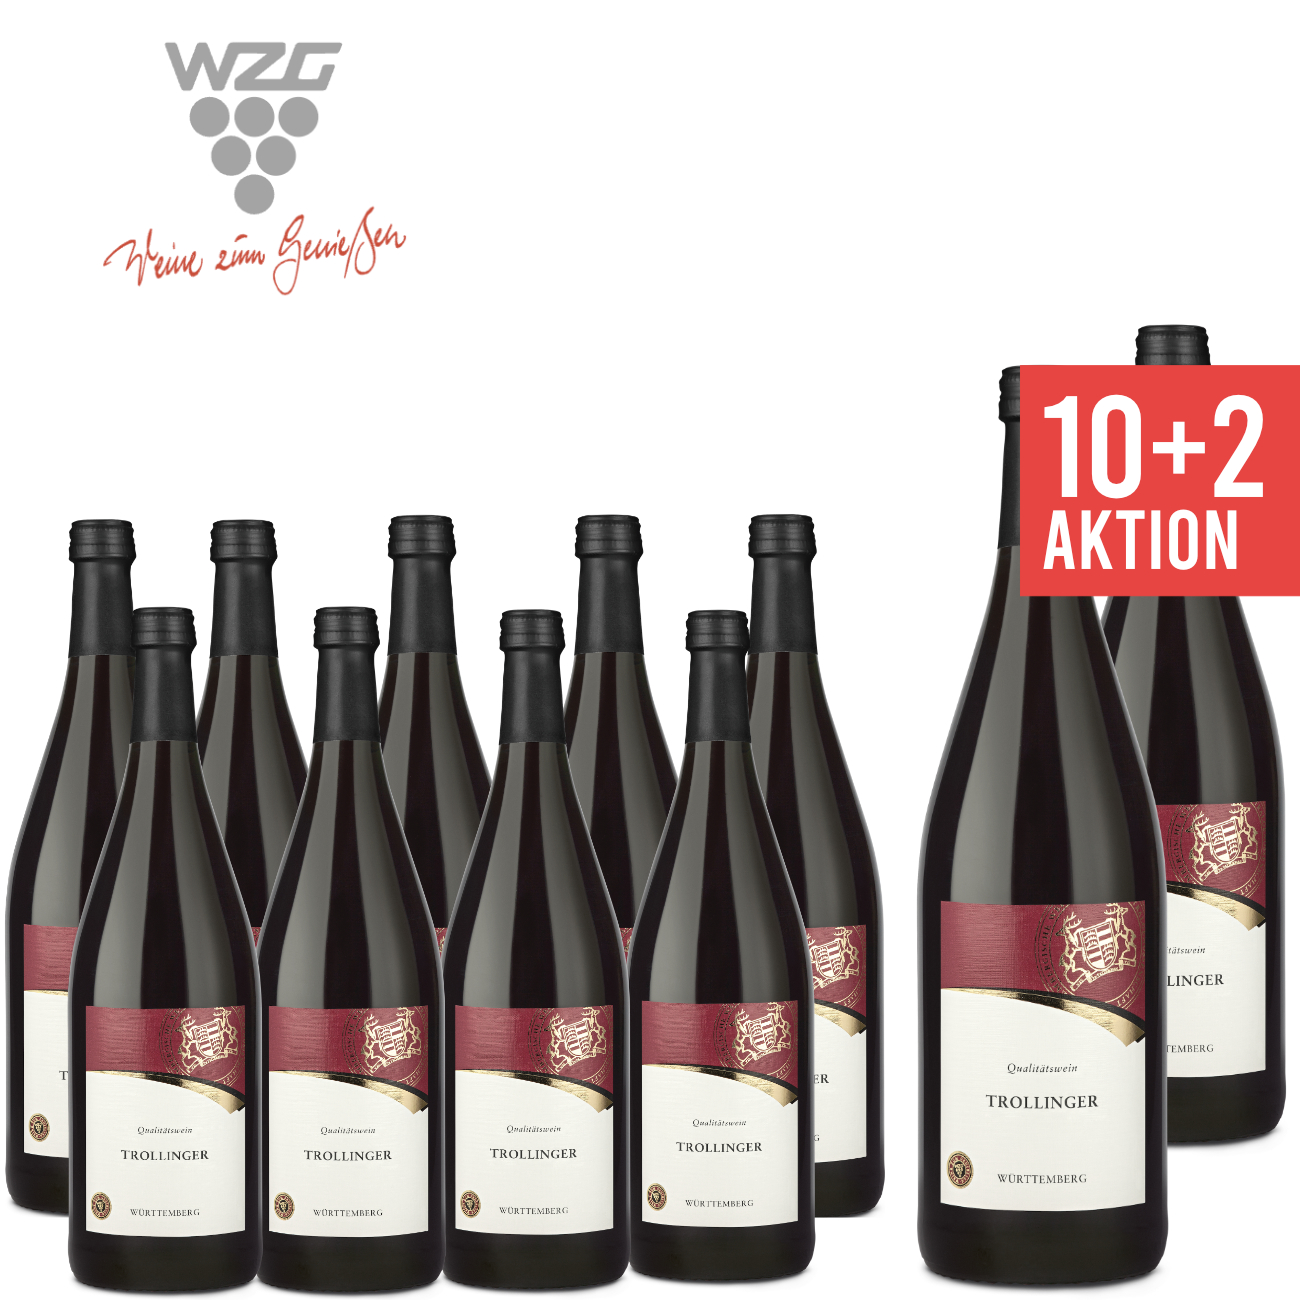 WZG Möglingen 10+2 Trollinger Württemberg 1,0 L - Qualitätswein, Rotwein, halbtrocken, Literflasche, 1-Liter, Württemberger Wein